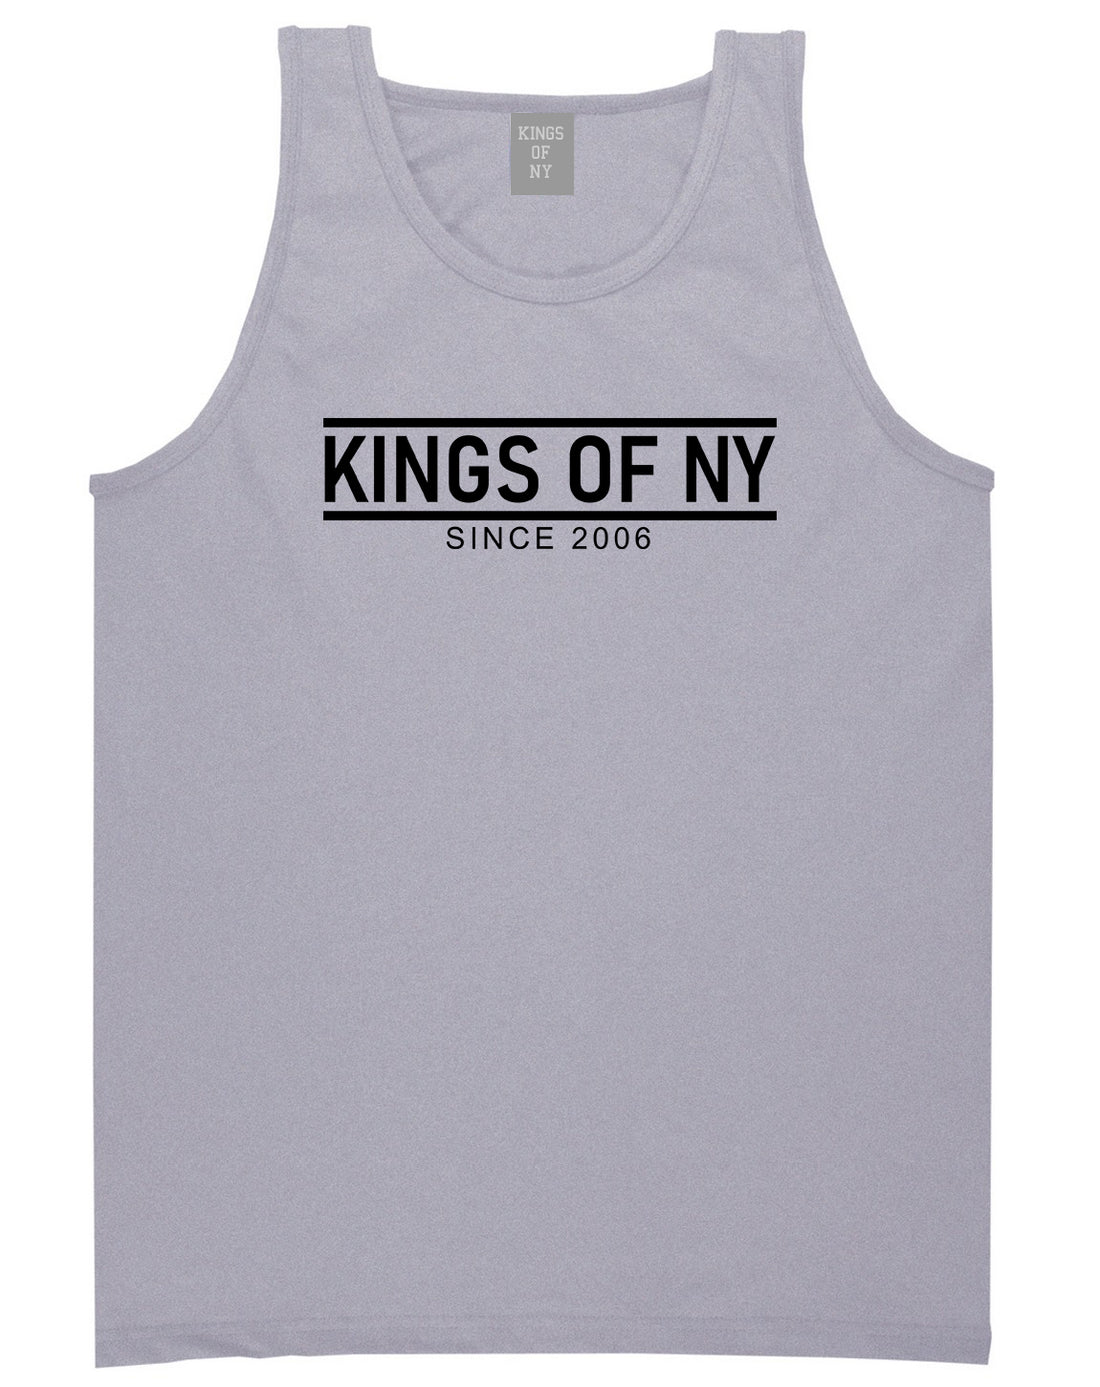 KINGS OF NY City Lines 2006 Mens Tank Top T-Shirt Grey